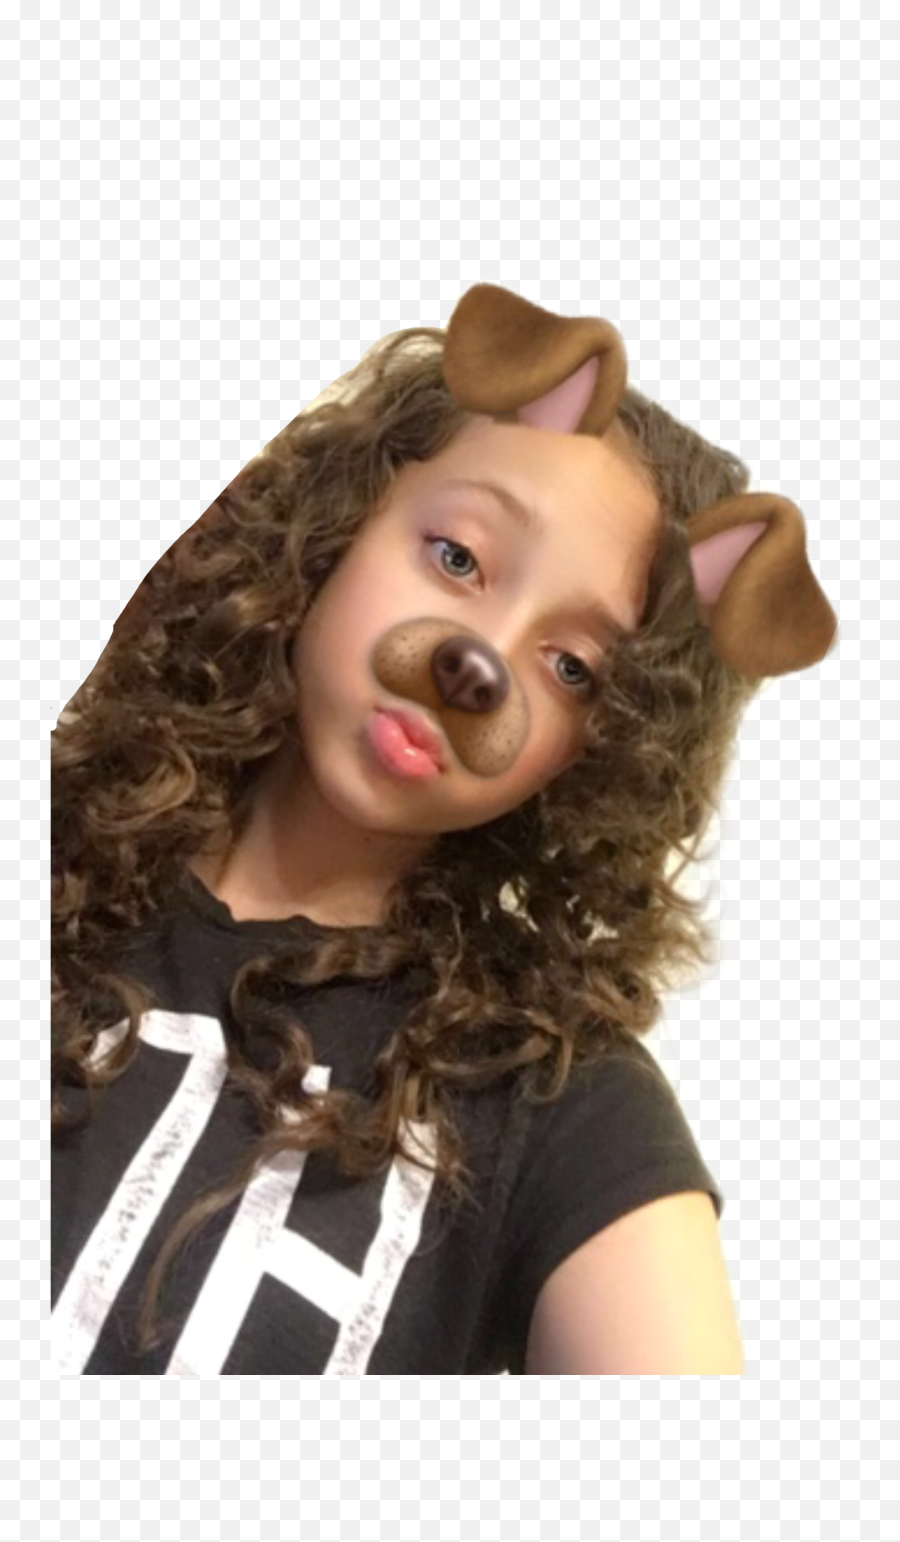 Isabella Girl Puppy Snapchat Sticker - Ringlet Emoji,Lipstick Emoji On Snapchat